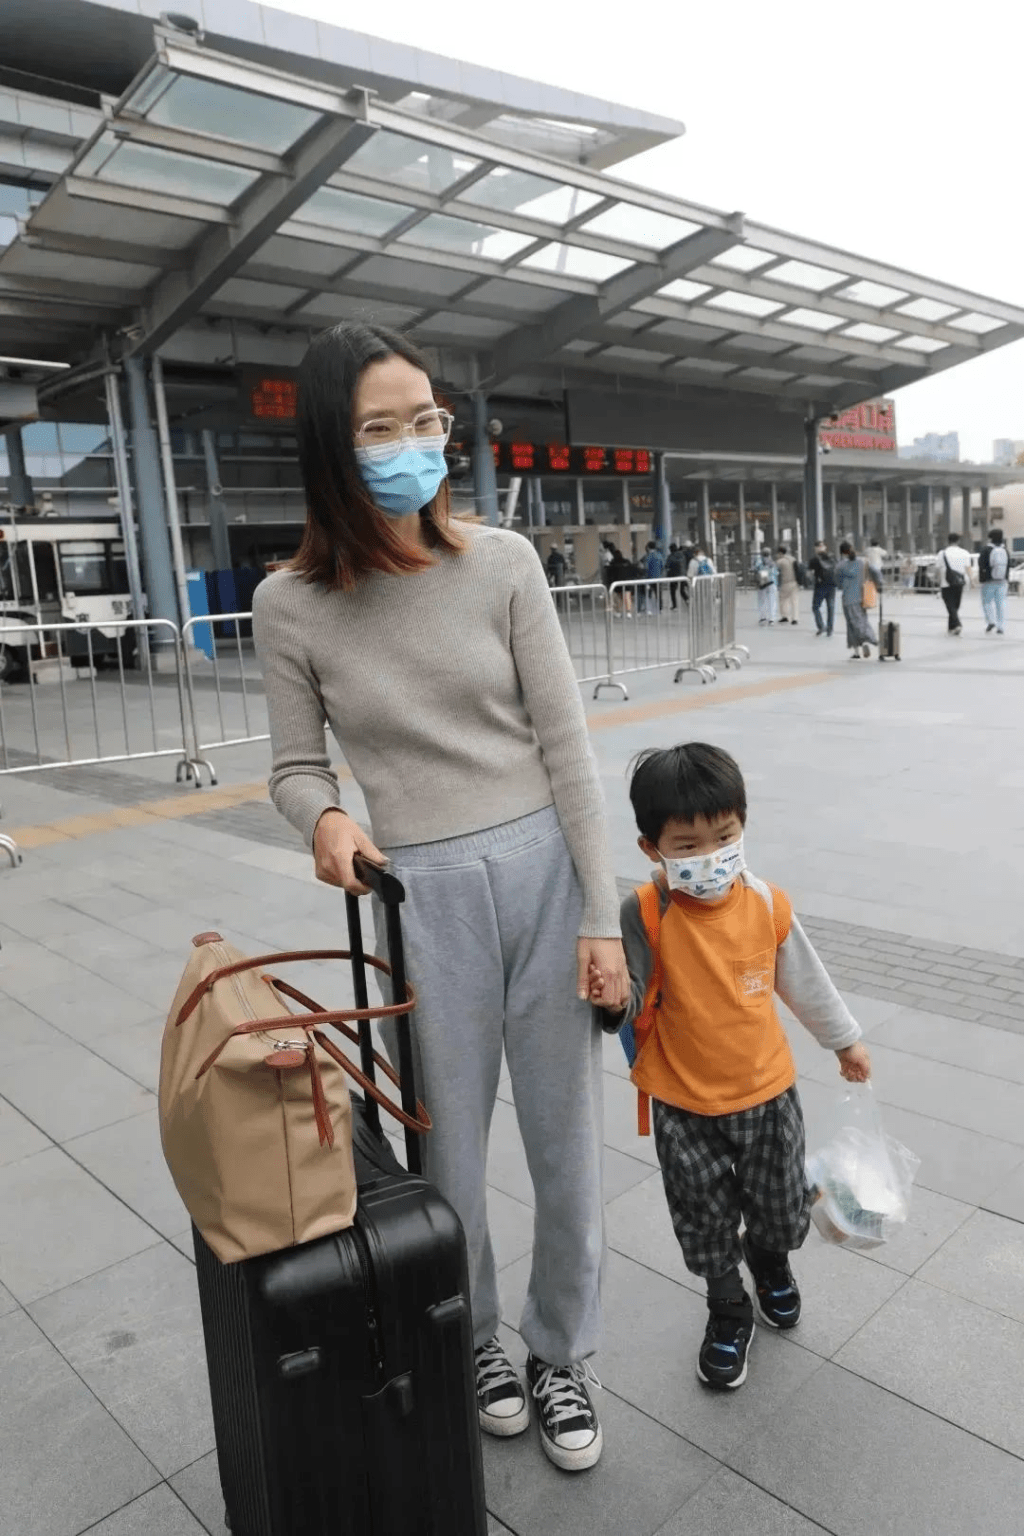 来自广东江门的曾女士带著4岁的儿子过港，打算带他去迪士尼、科技馆等地方打卡。